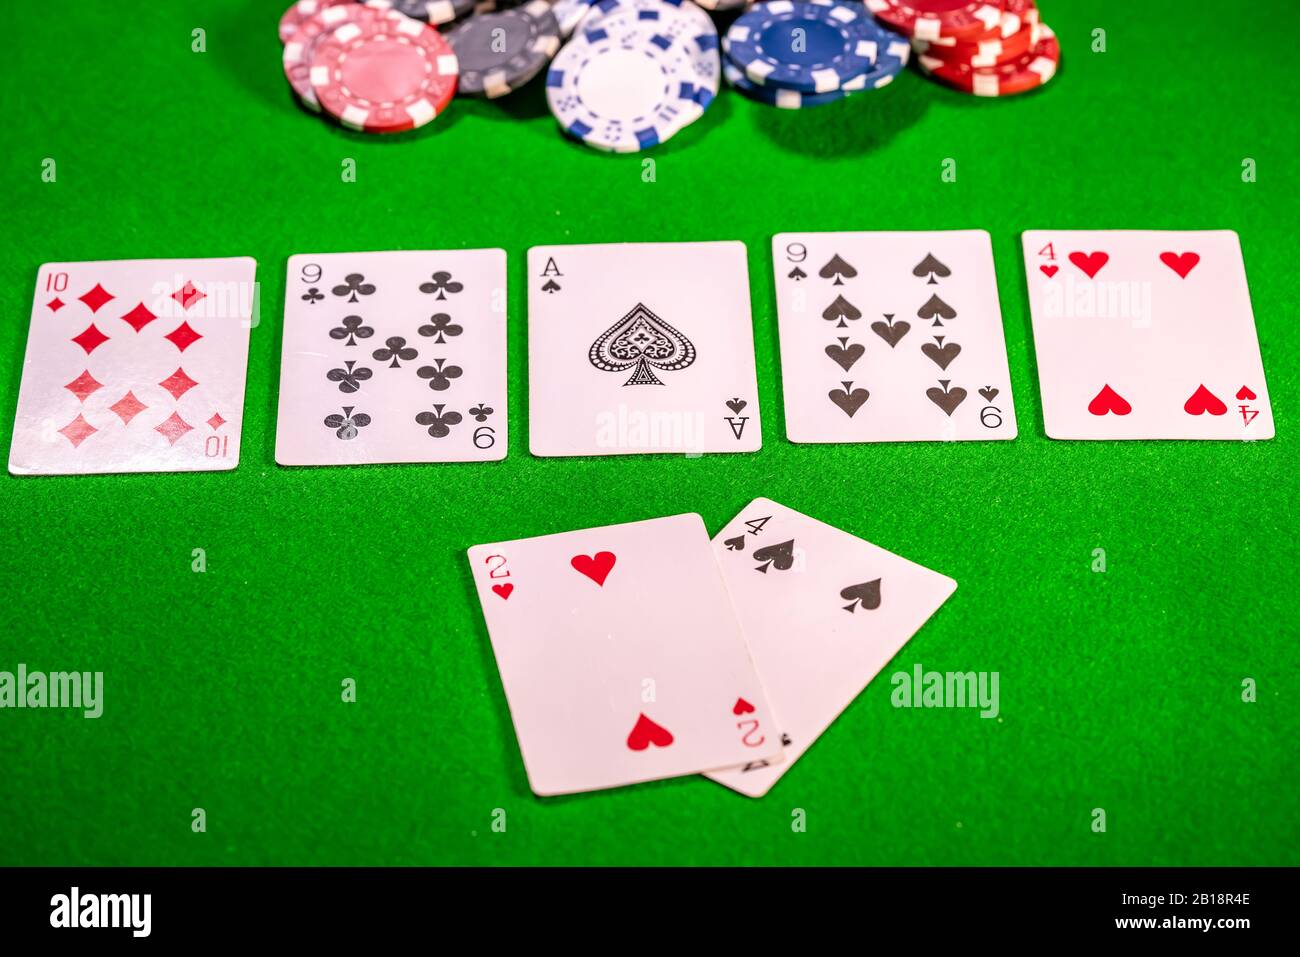 11 Deux paires gagnant main dans un jeu de Texas Holdem poker Banque D'Images